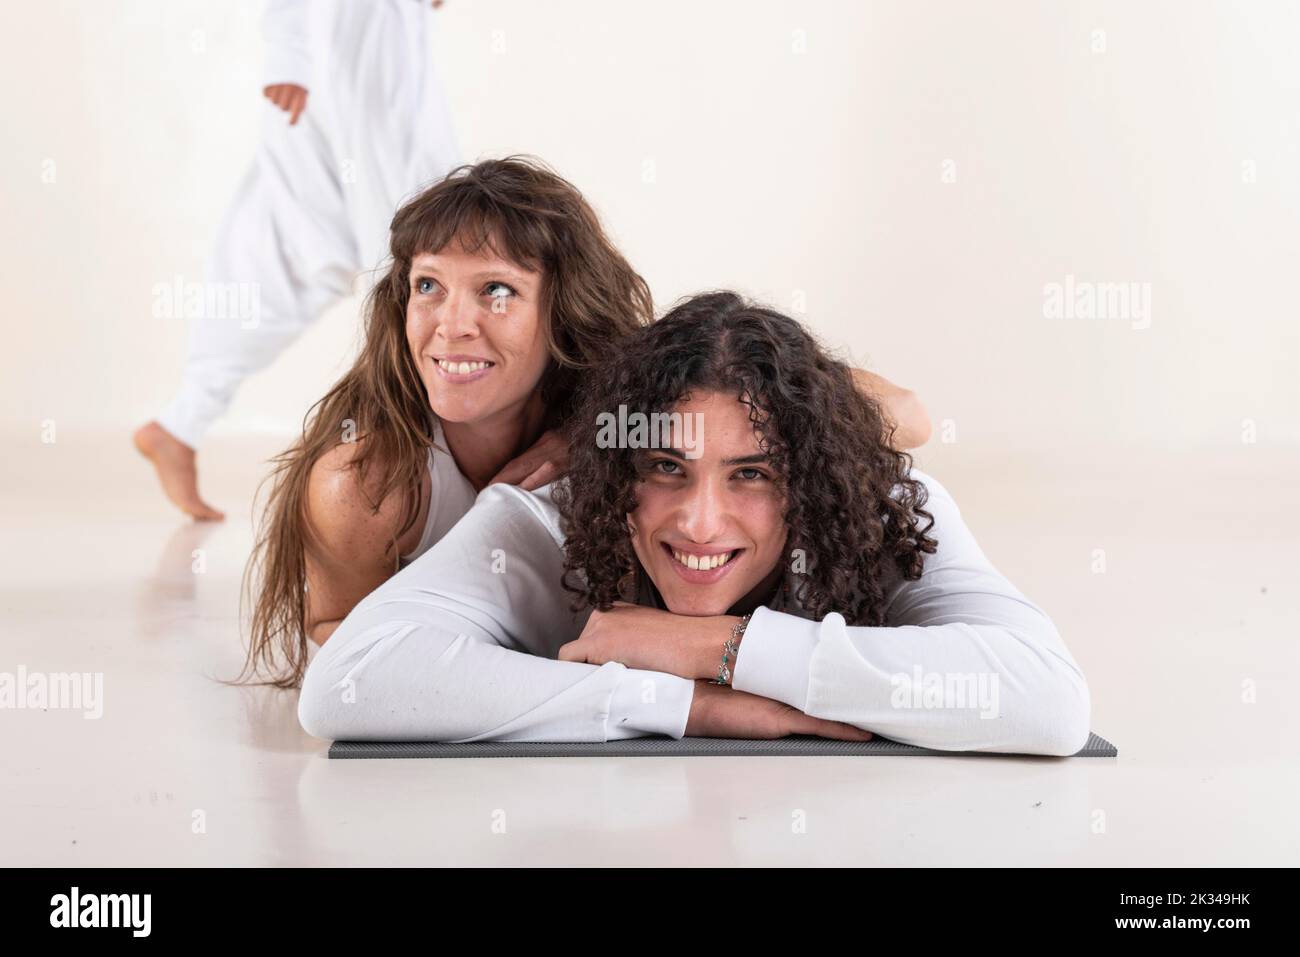 Portrait d'un jeune homme vêtu de vêtements blancs de yoga allongé sur un tapis tout en regardant l'appareil photo avec un ami sur fond blanc. Prise de vue en studio Banque D'Images